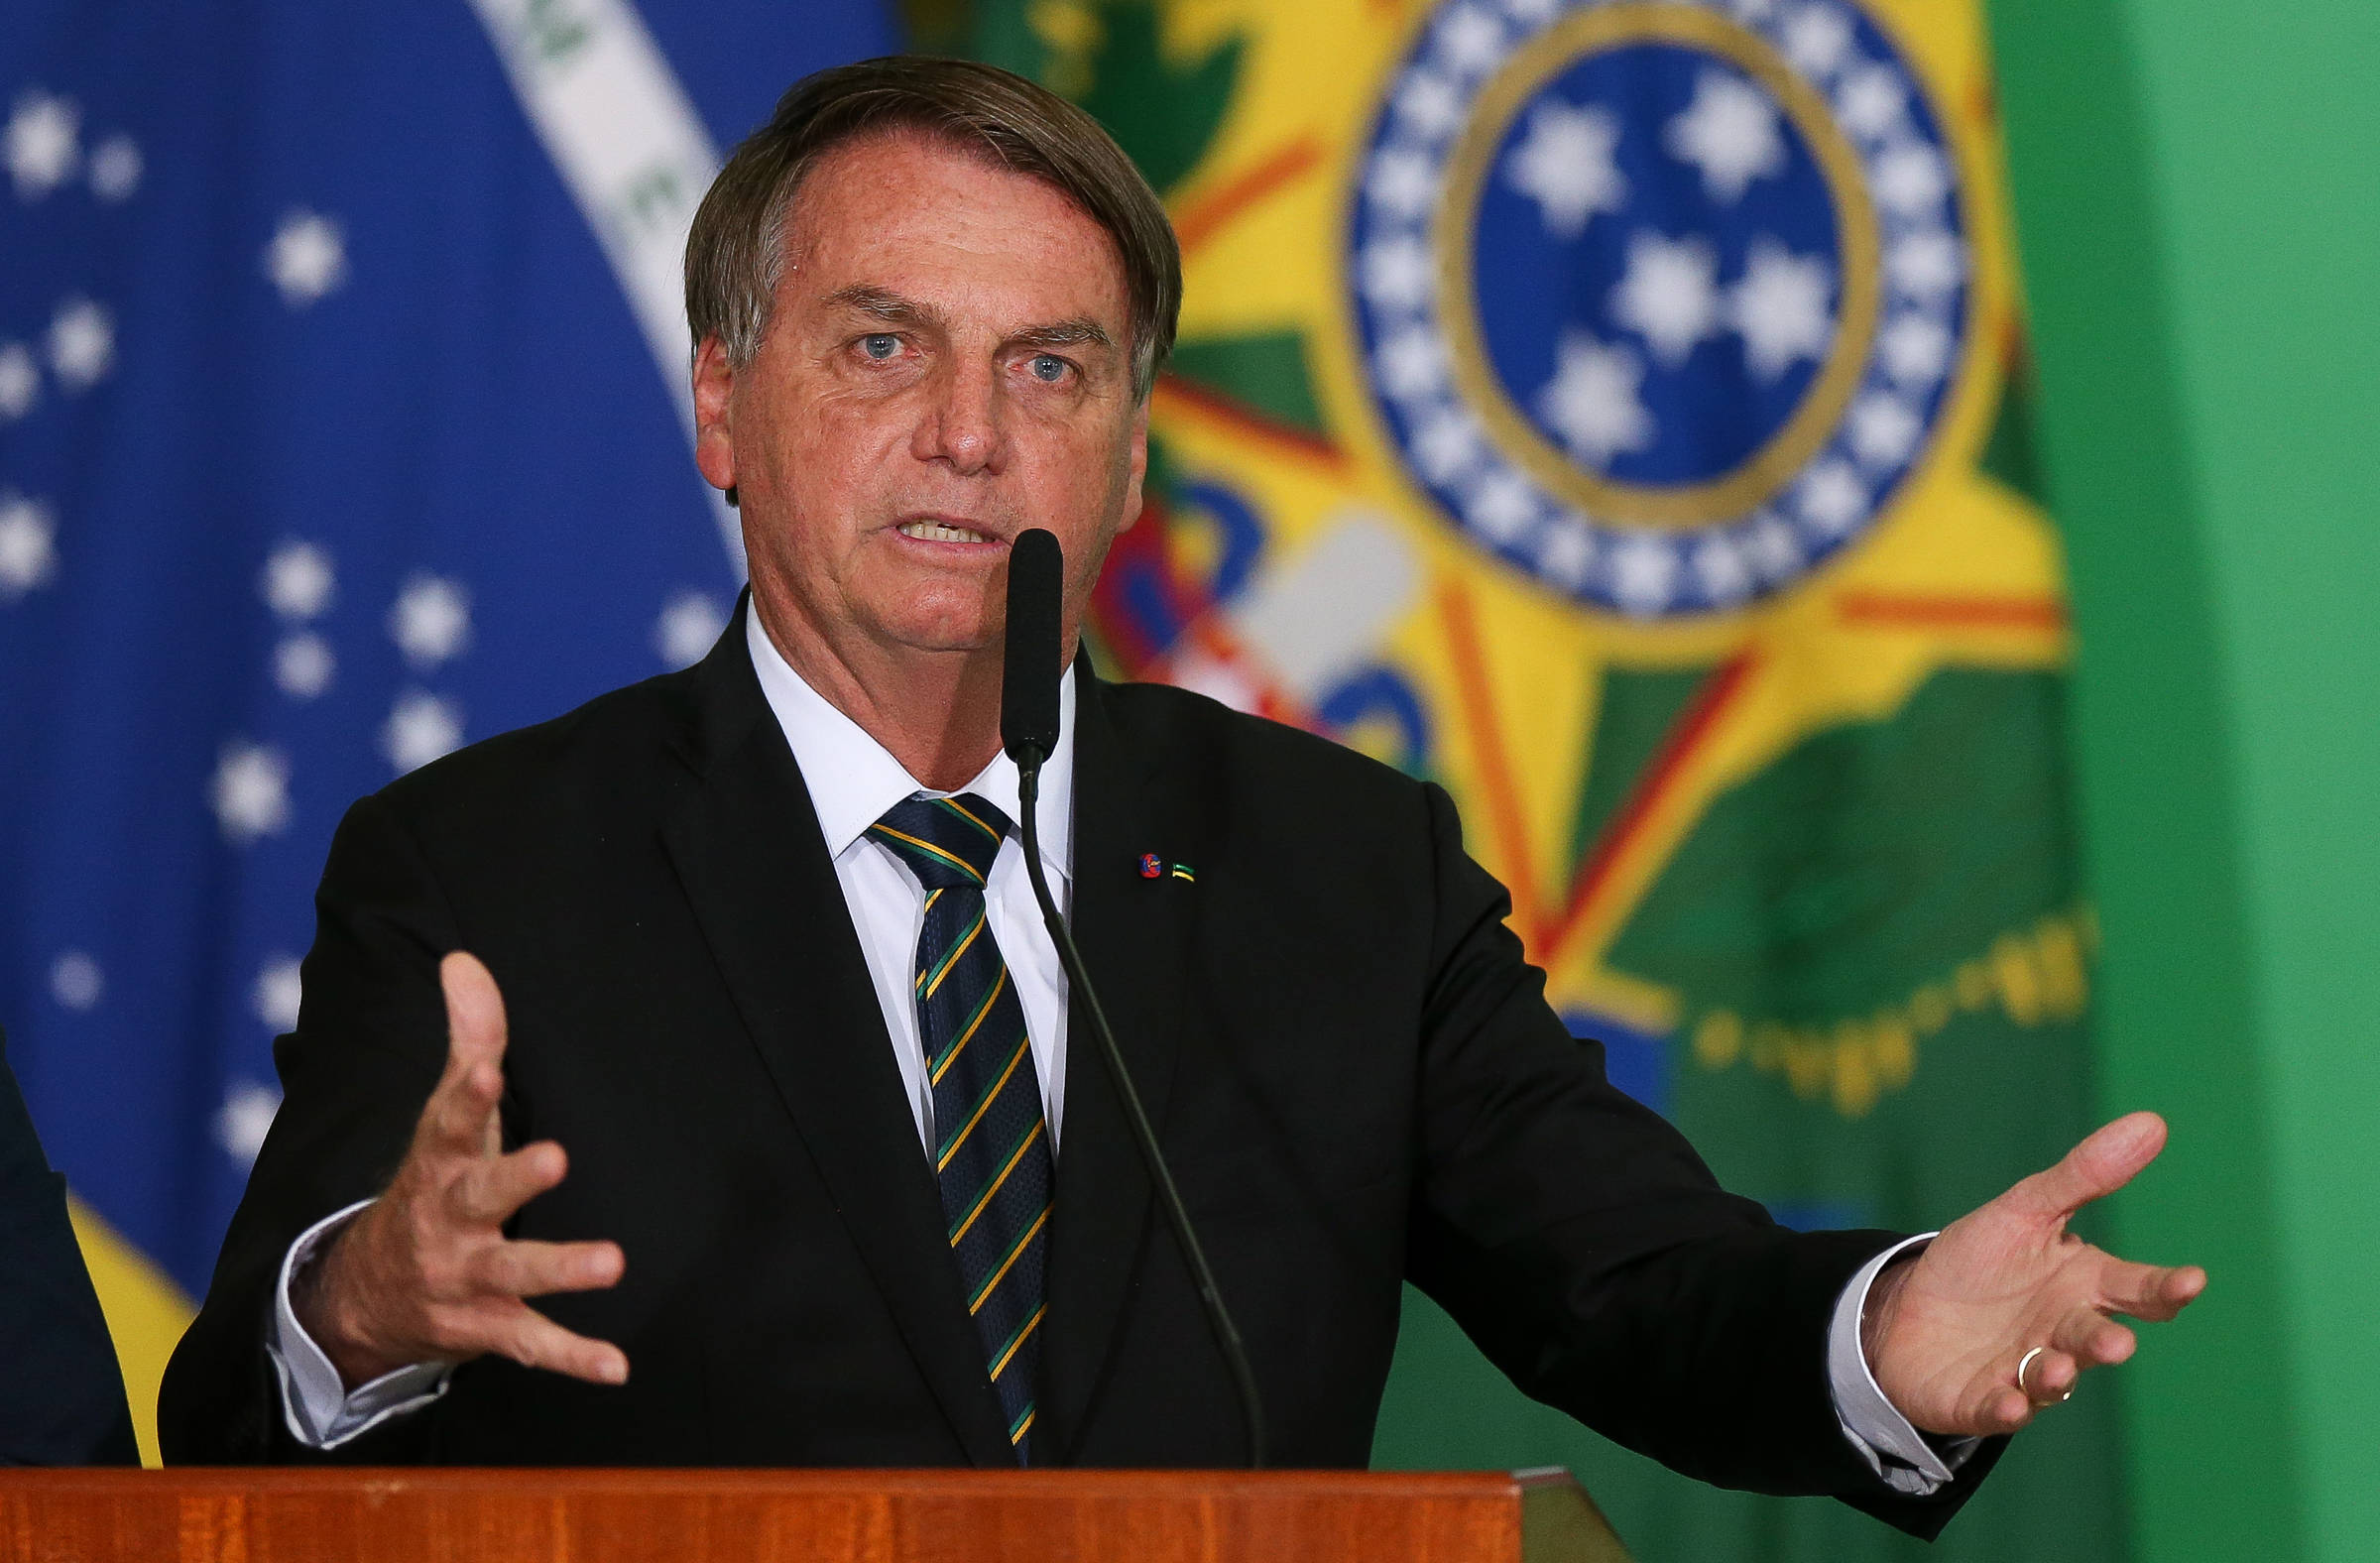 Municípios com mais votos em Bolsonaro tiveram mais mortes por Covid-19, aponta estudo